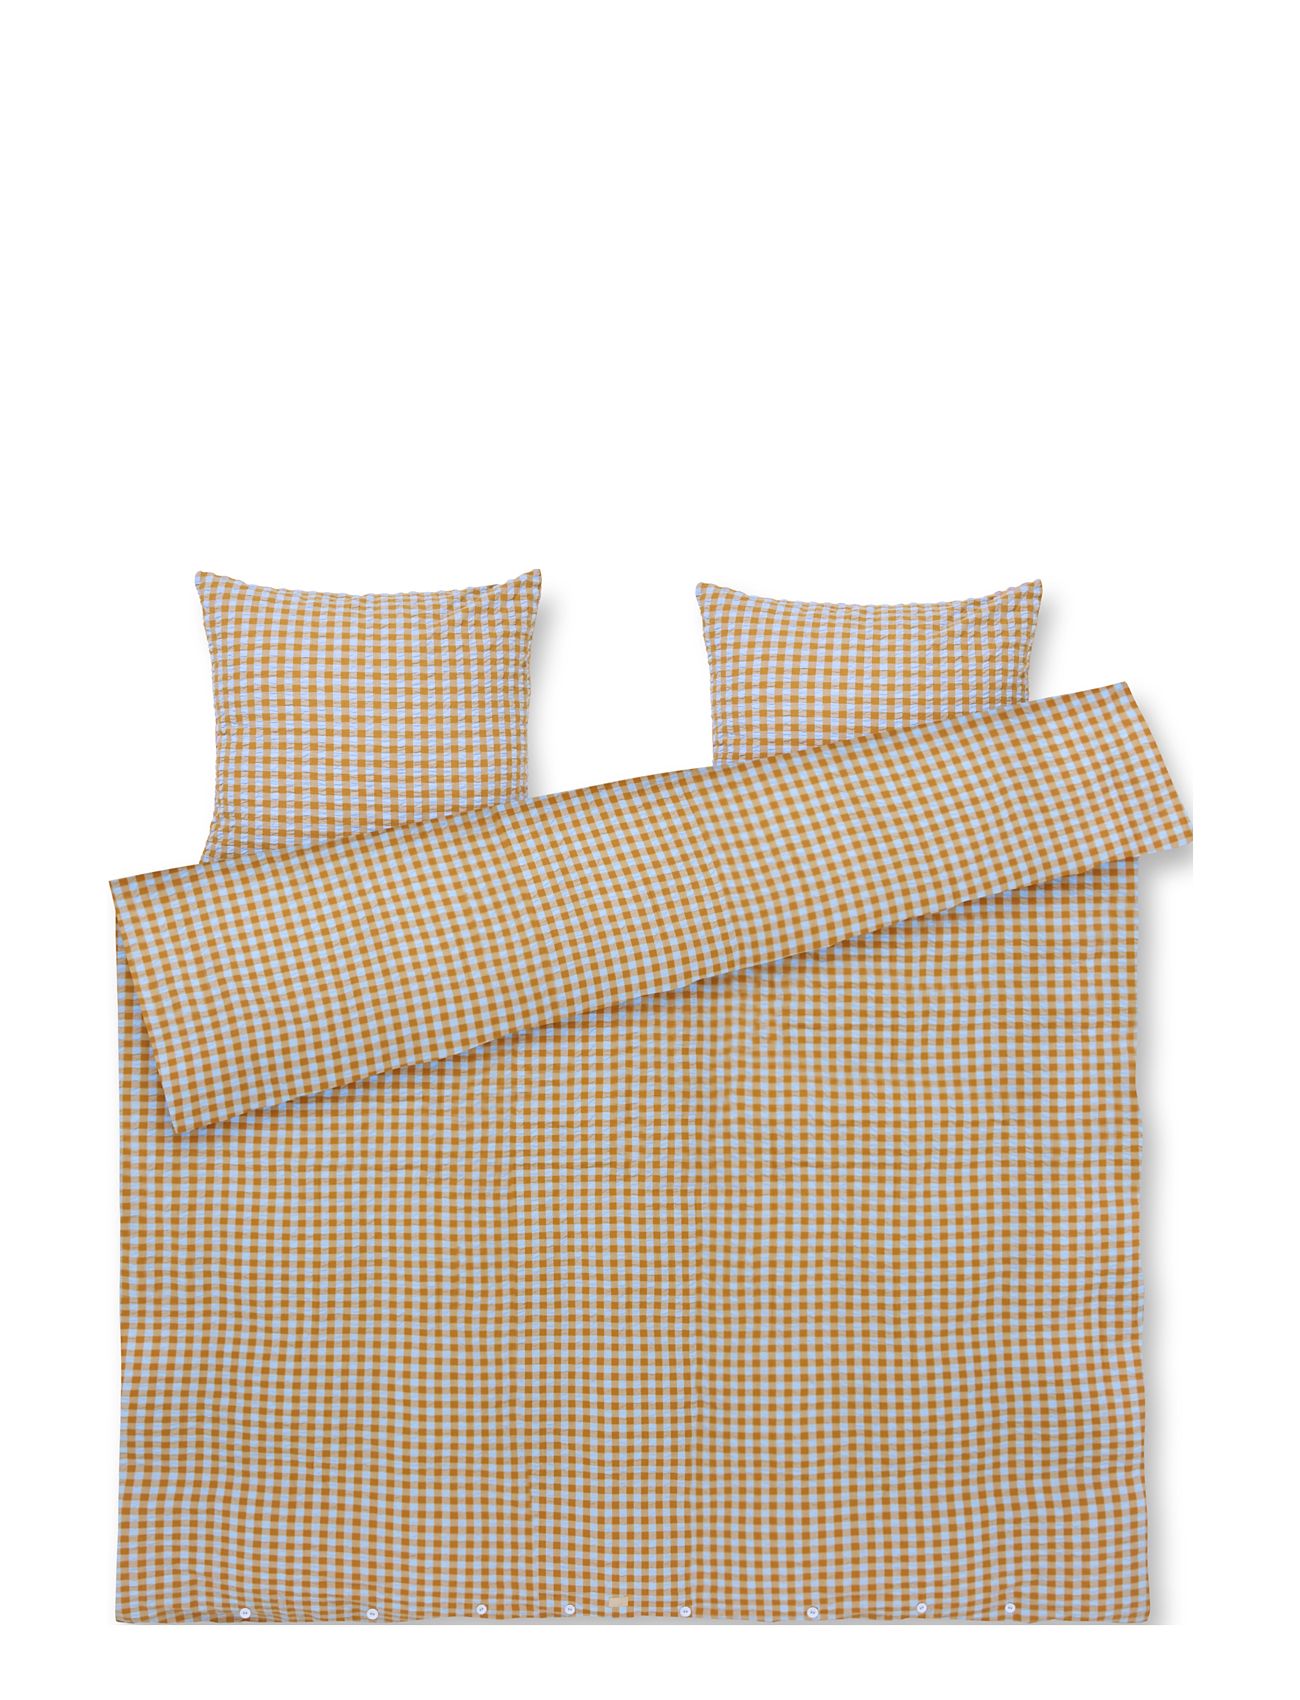 Bæk&Bølge Sengetøj 200X220 Cm Lys Blå/Sand Home Textiles Bedtextiles Bed Sets Beige Juna